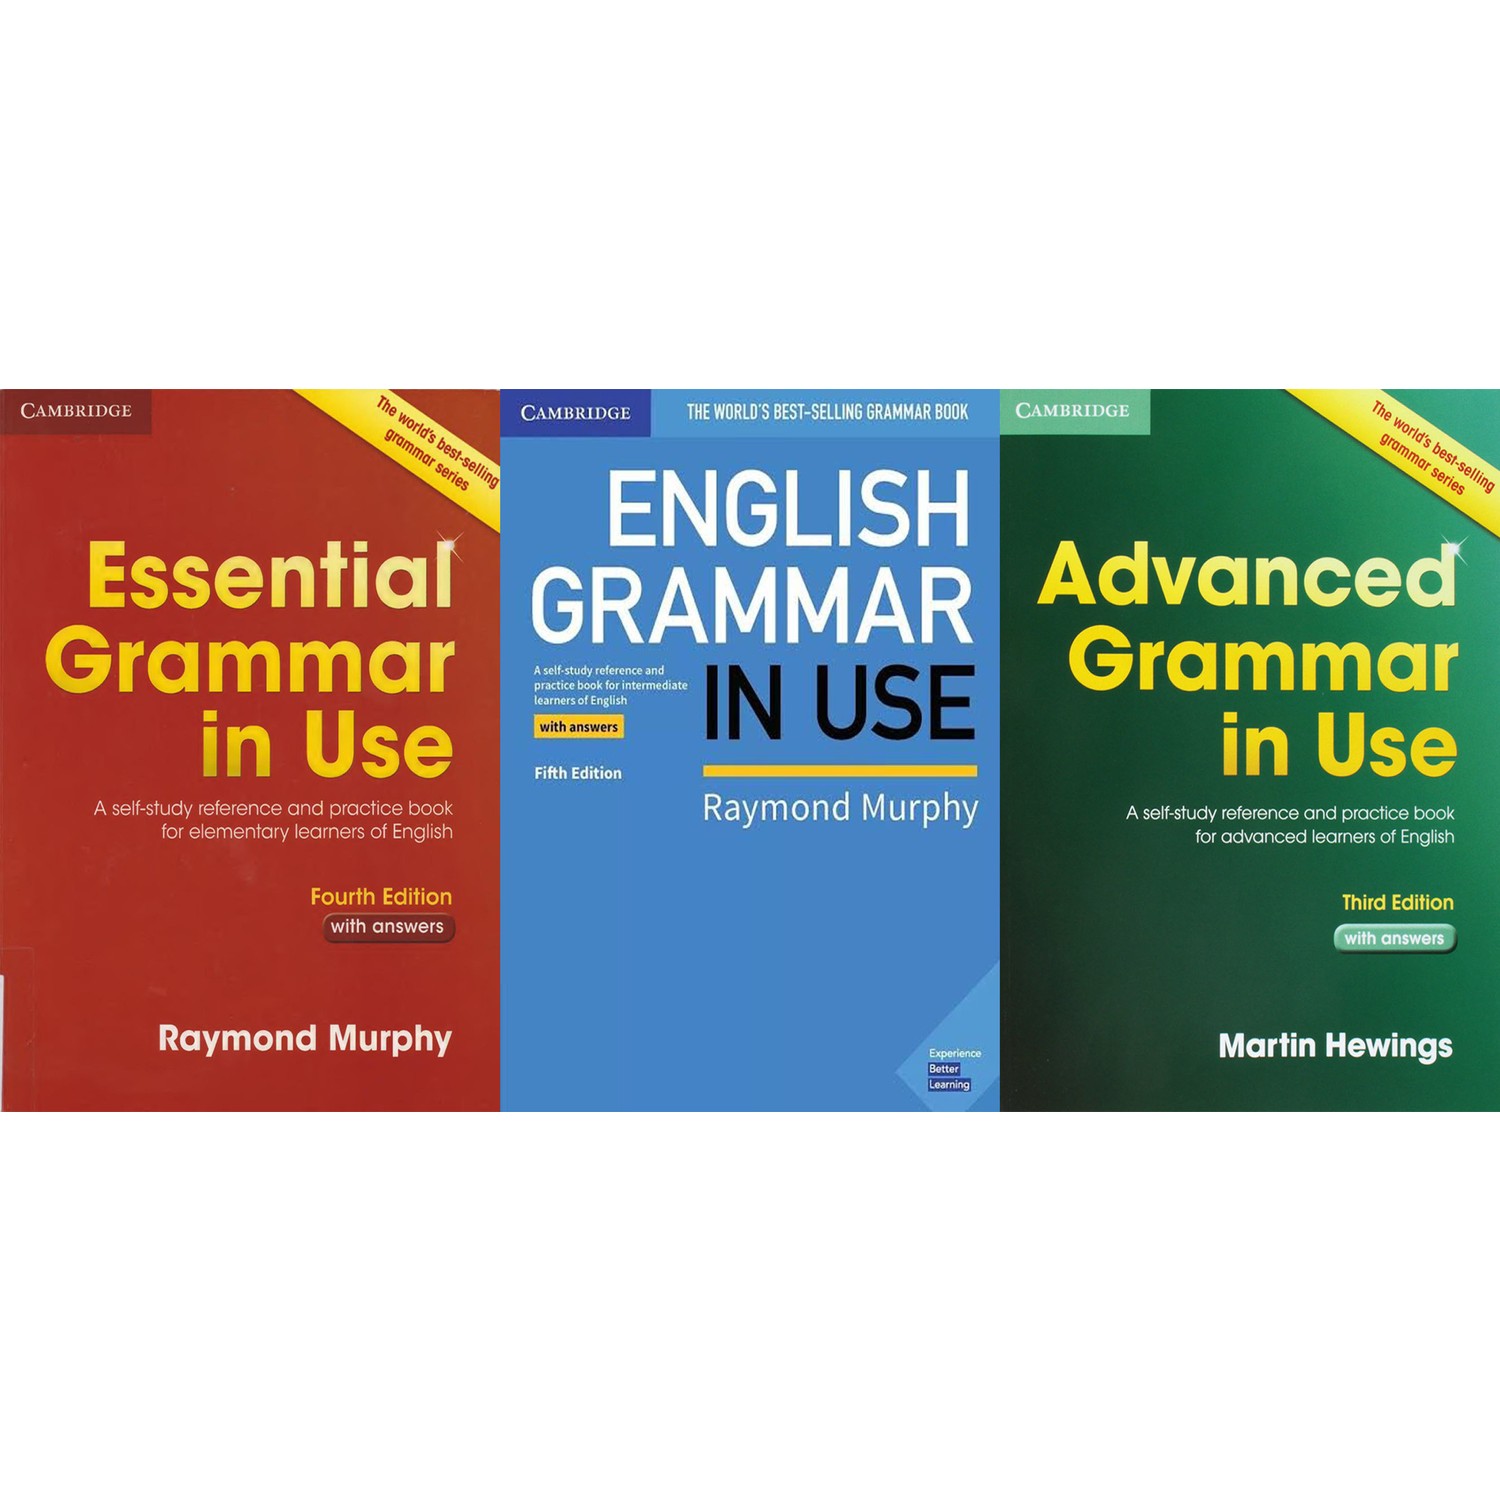 essential english grammar 2nd edition pdf